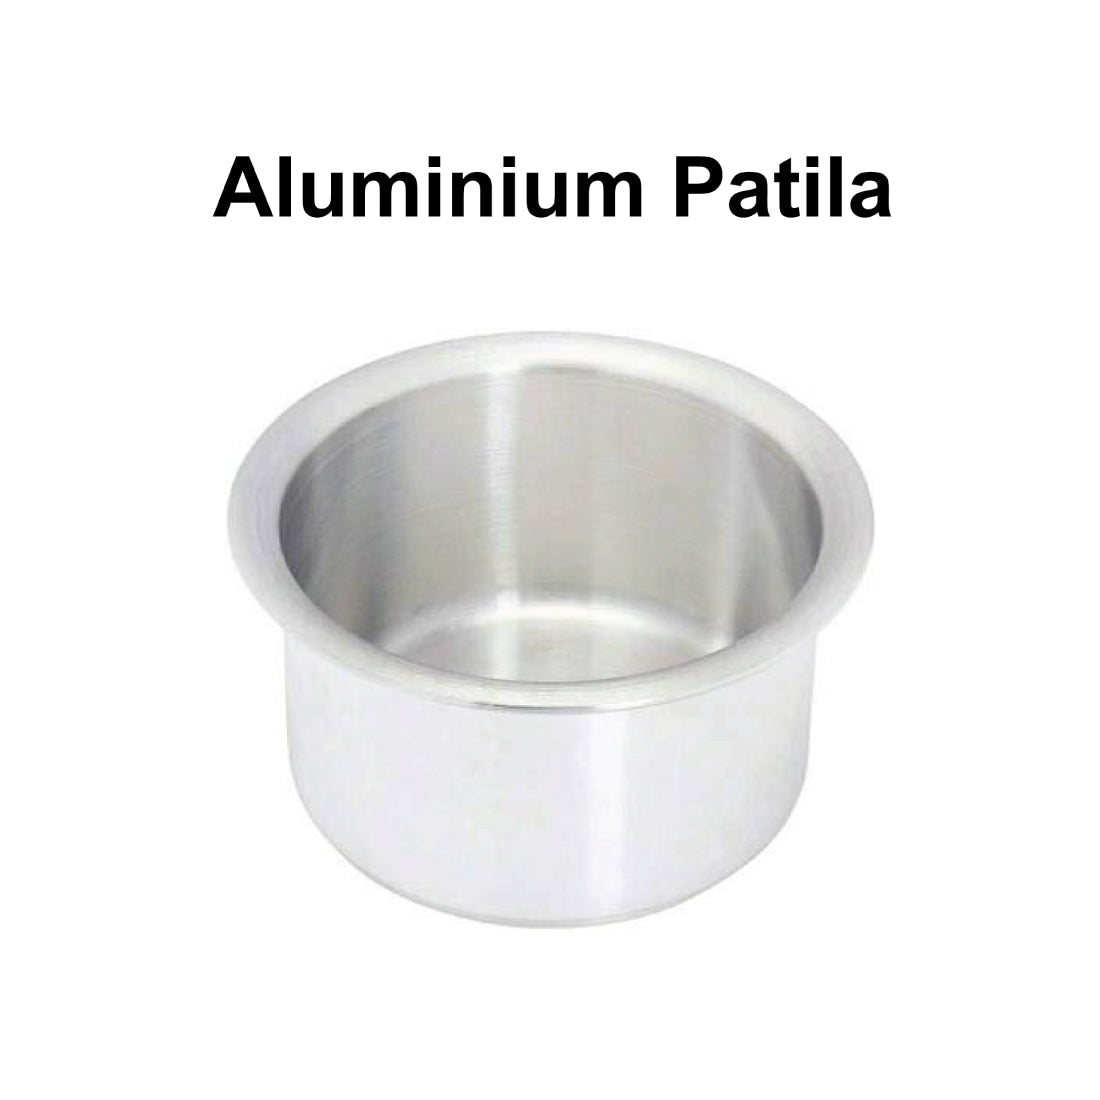 Aluminium Patila